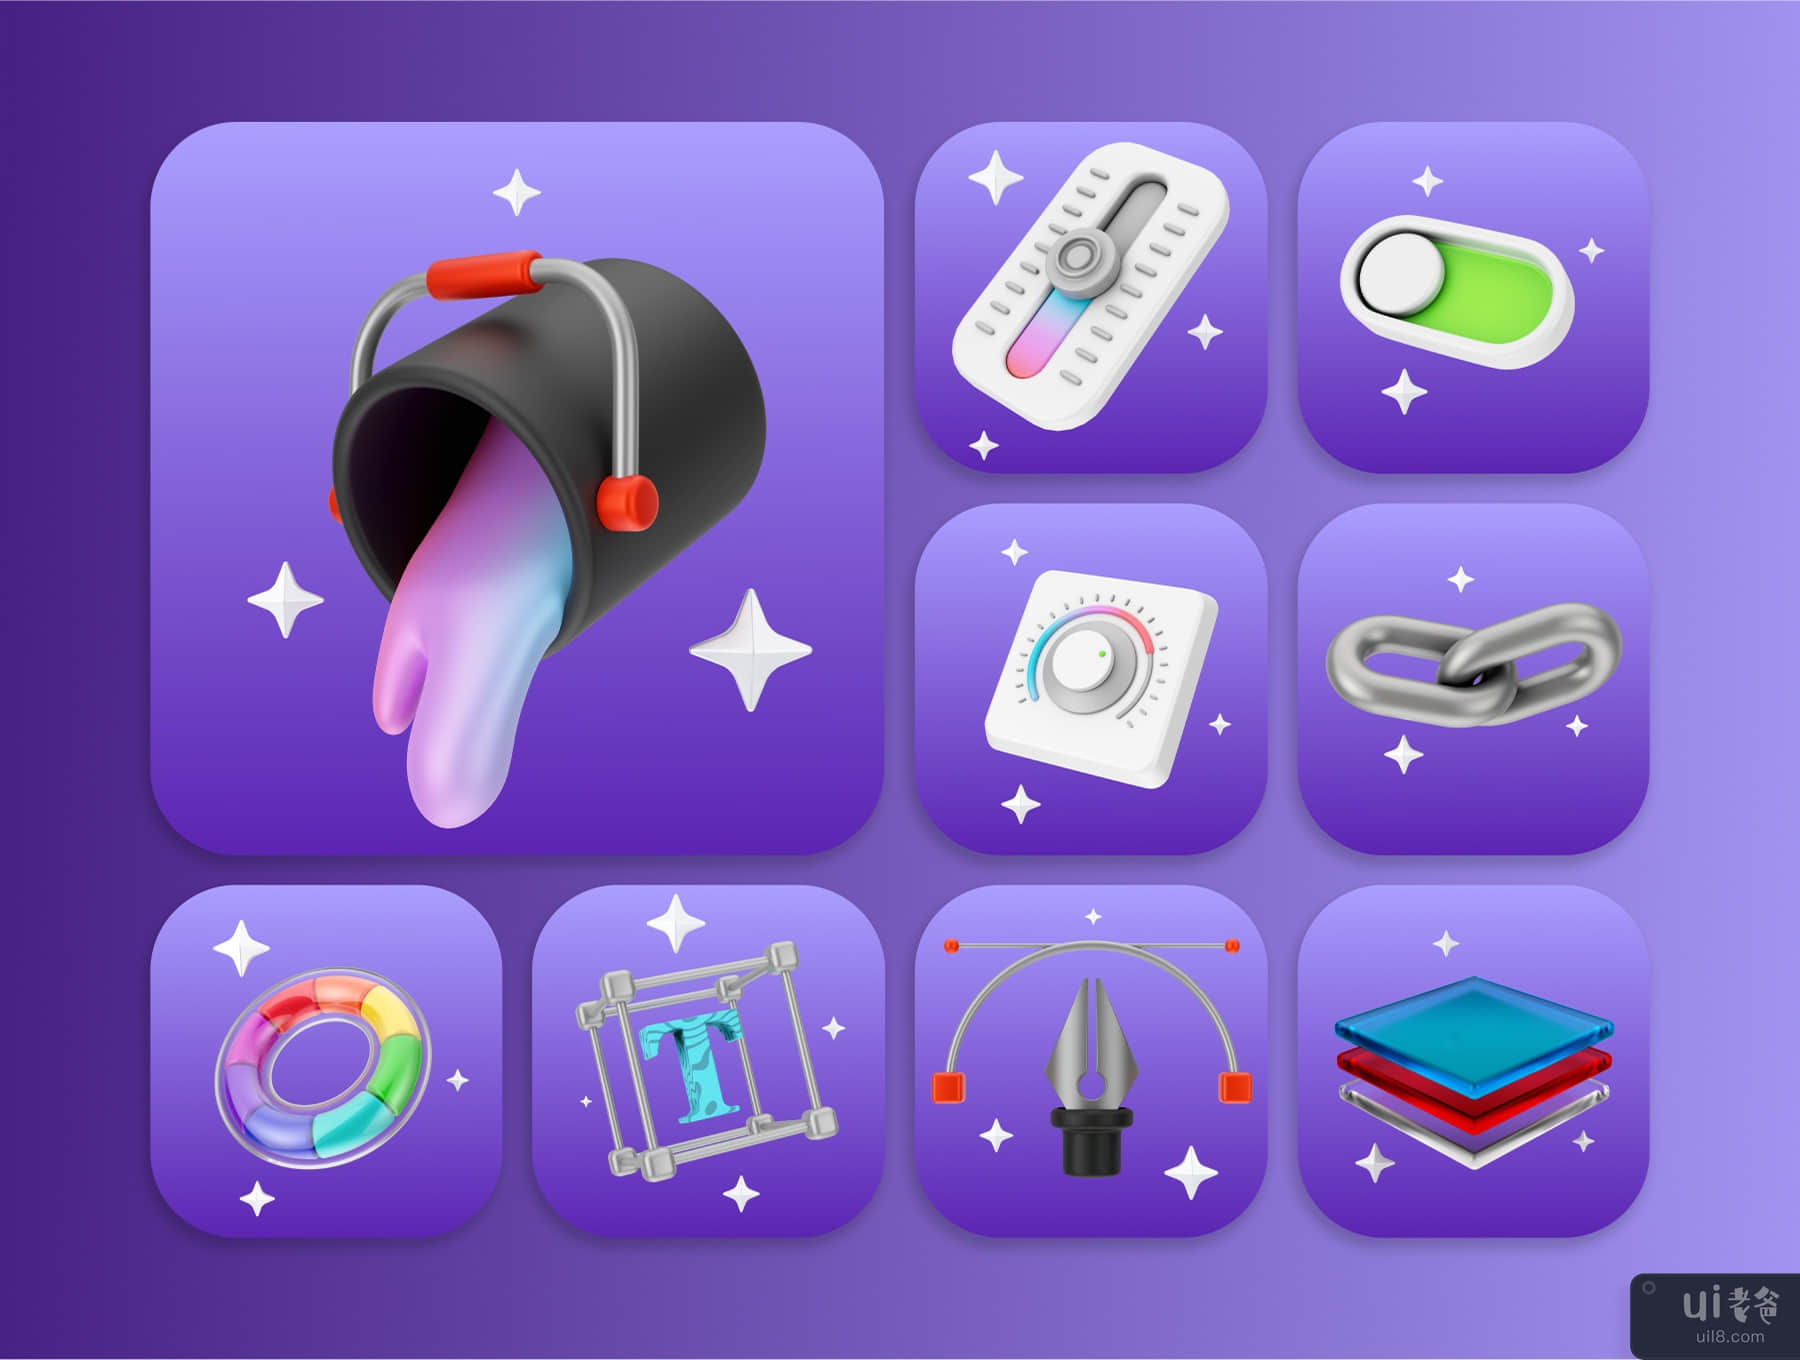 用户界面和平面设计 3D 图标和插图包 (User Interface And Graphic Design 3D Icon & illustration pack)插图